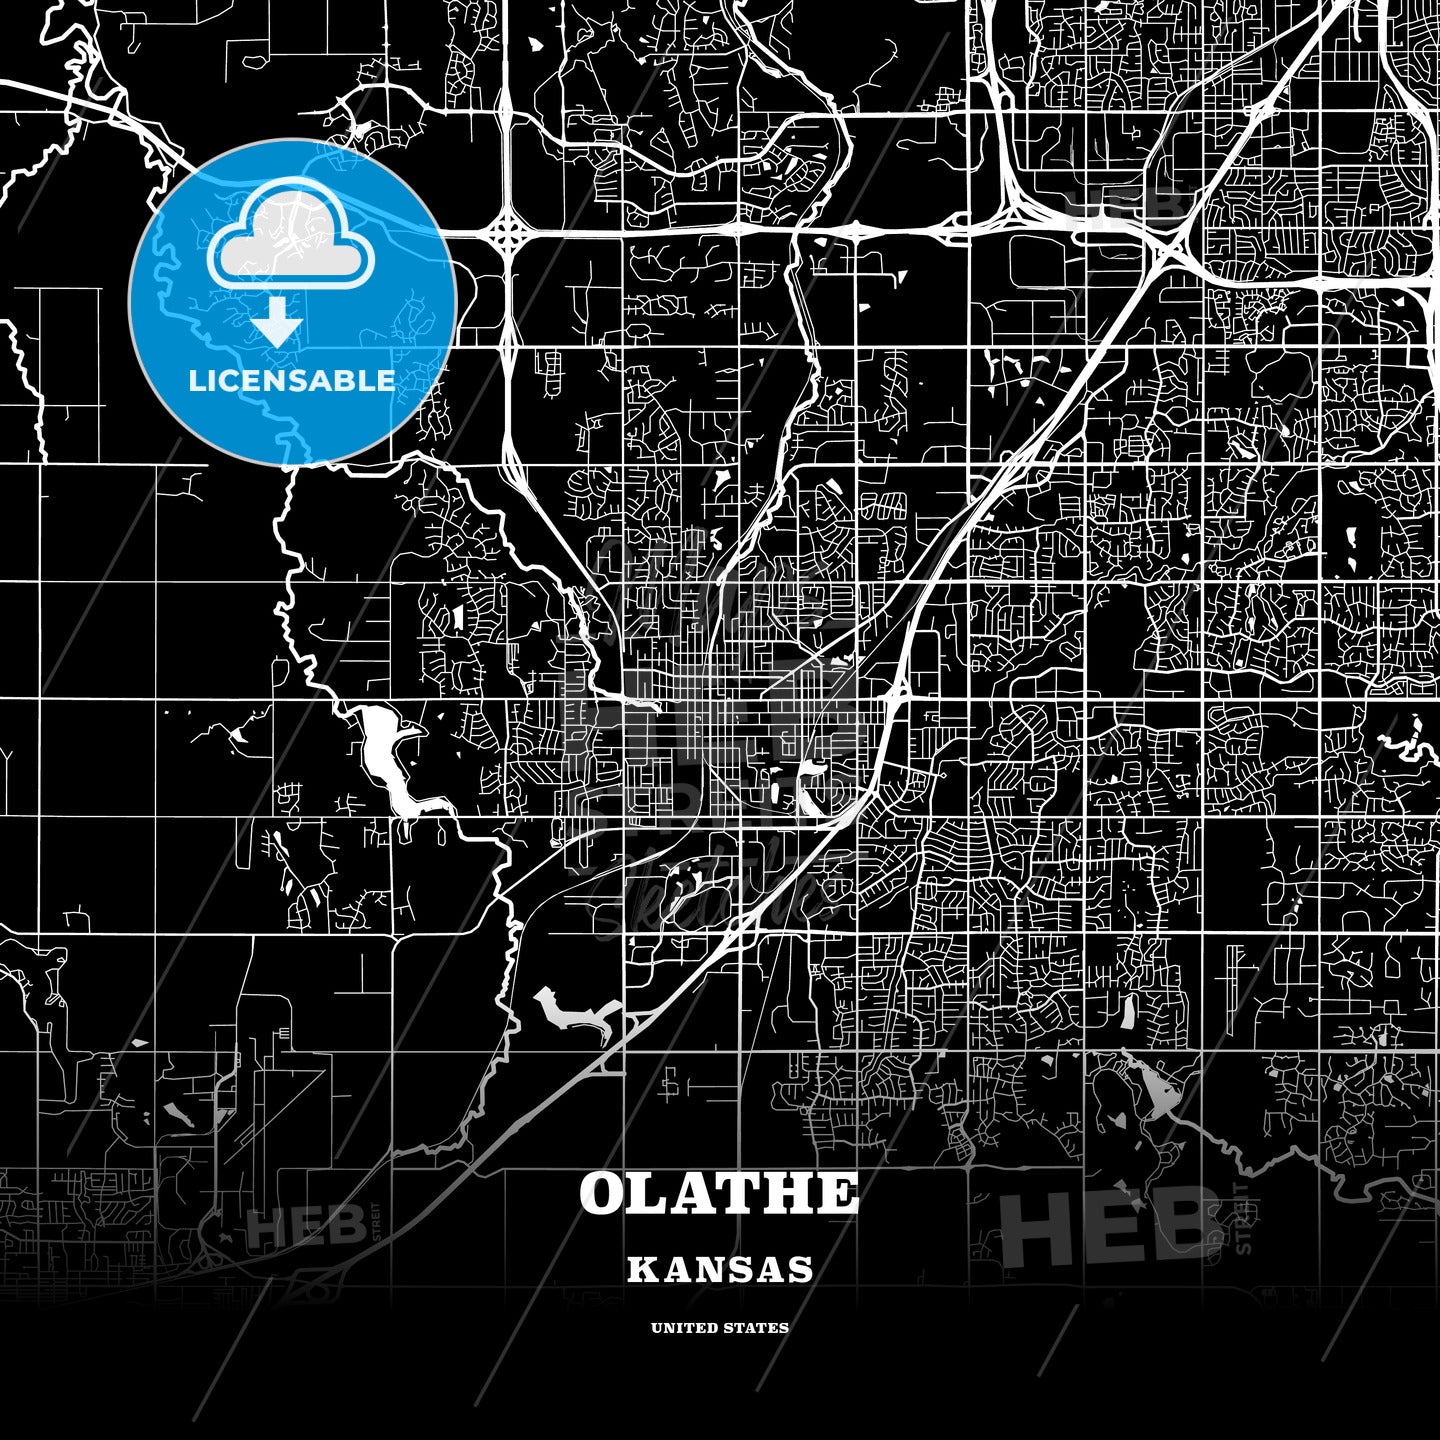 Olathe, Kansas, USA map